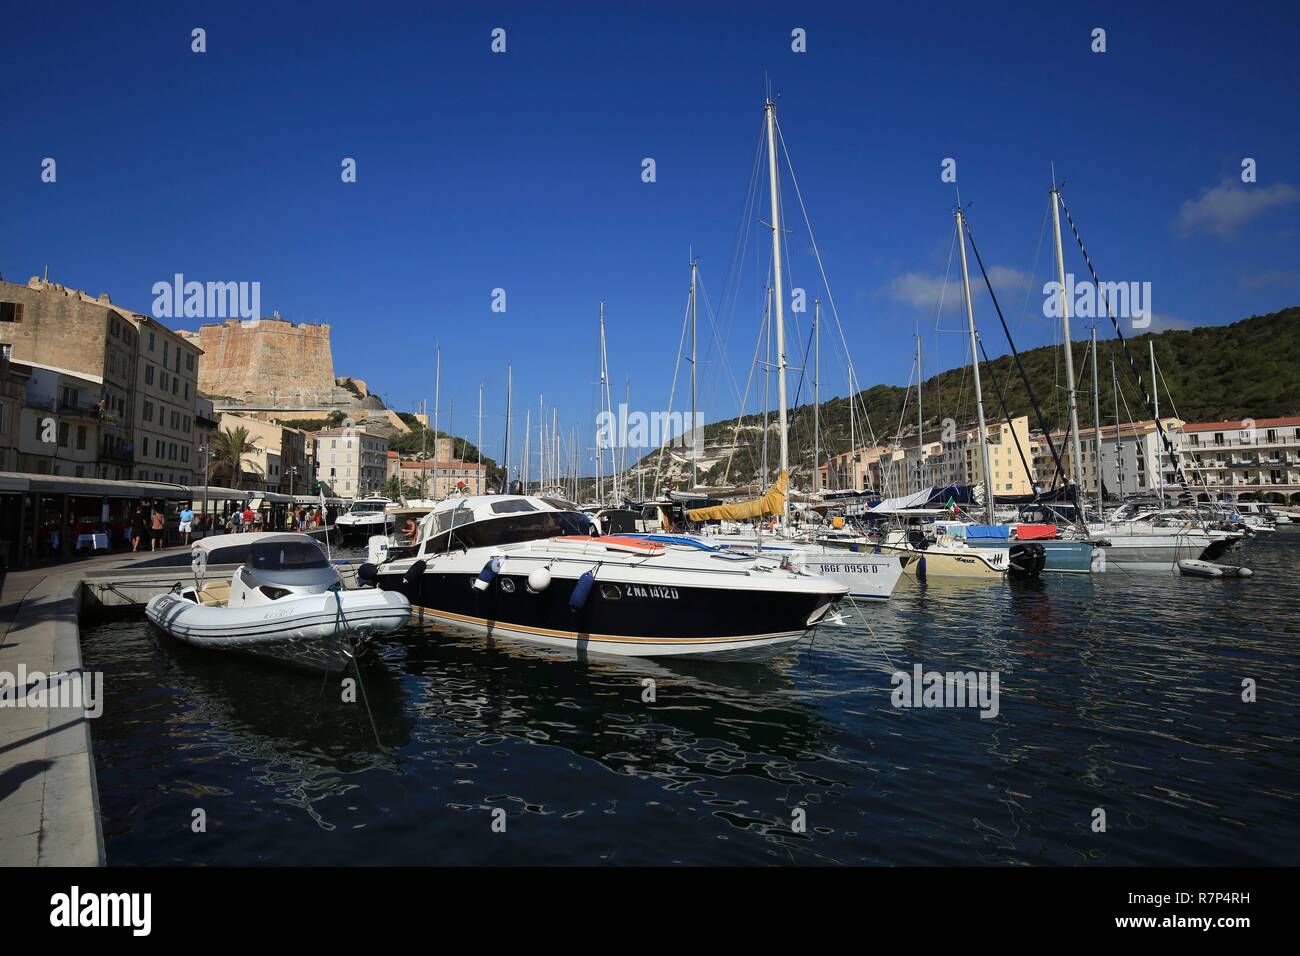 Frankreich, Corse, Bonifacio, der Bouches de Bonifacio, der Hafen von Bonifacio und die Zitadelle im Hintergrund Stockfoto